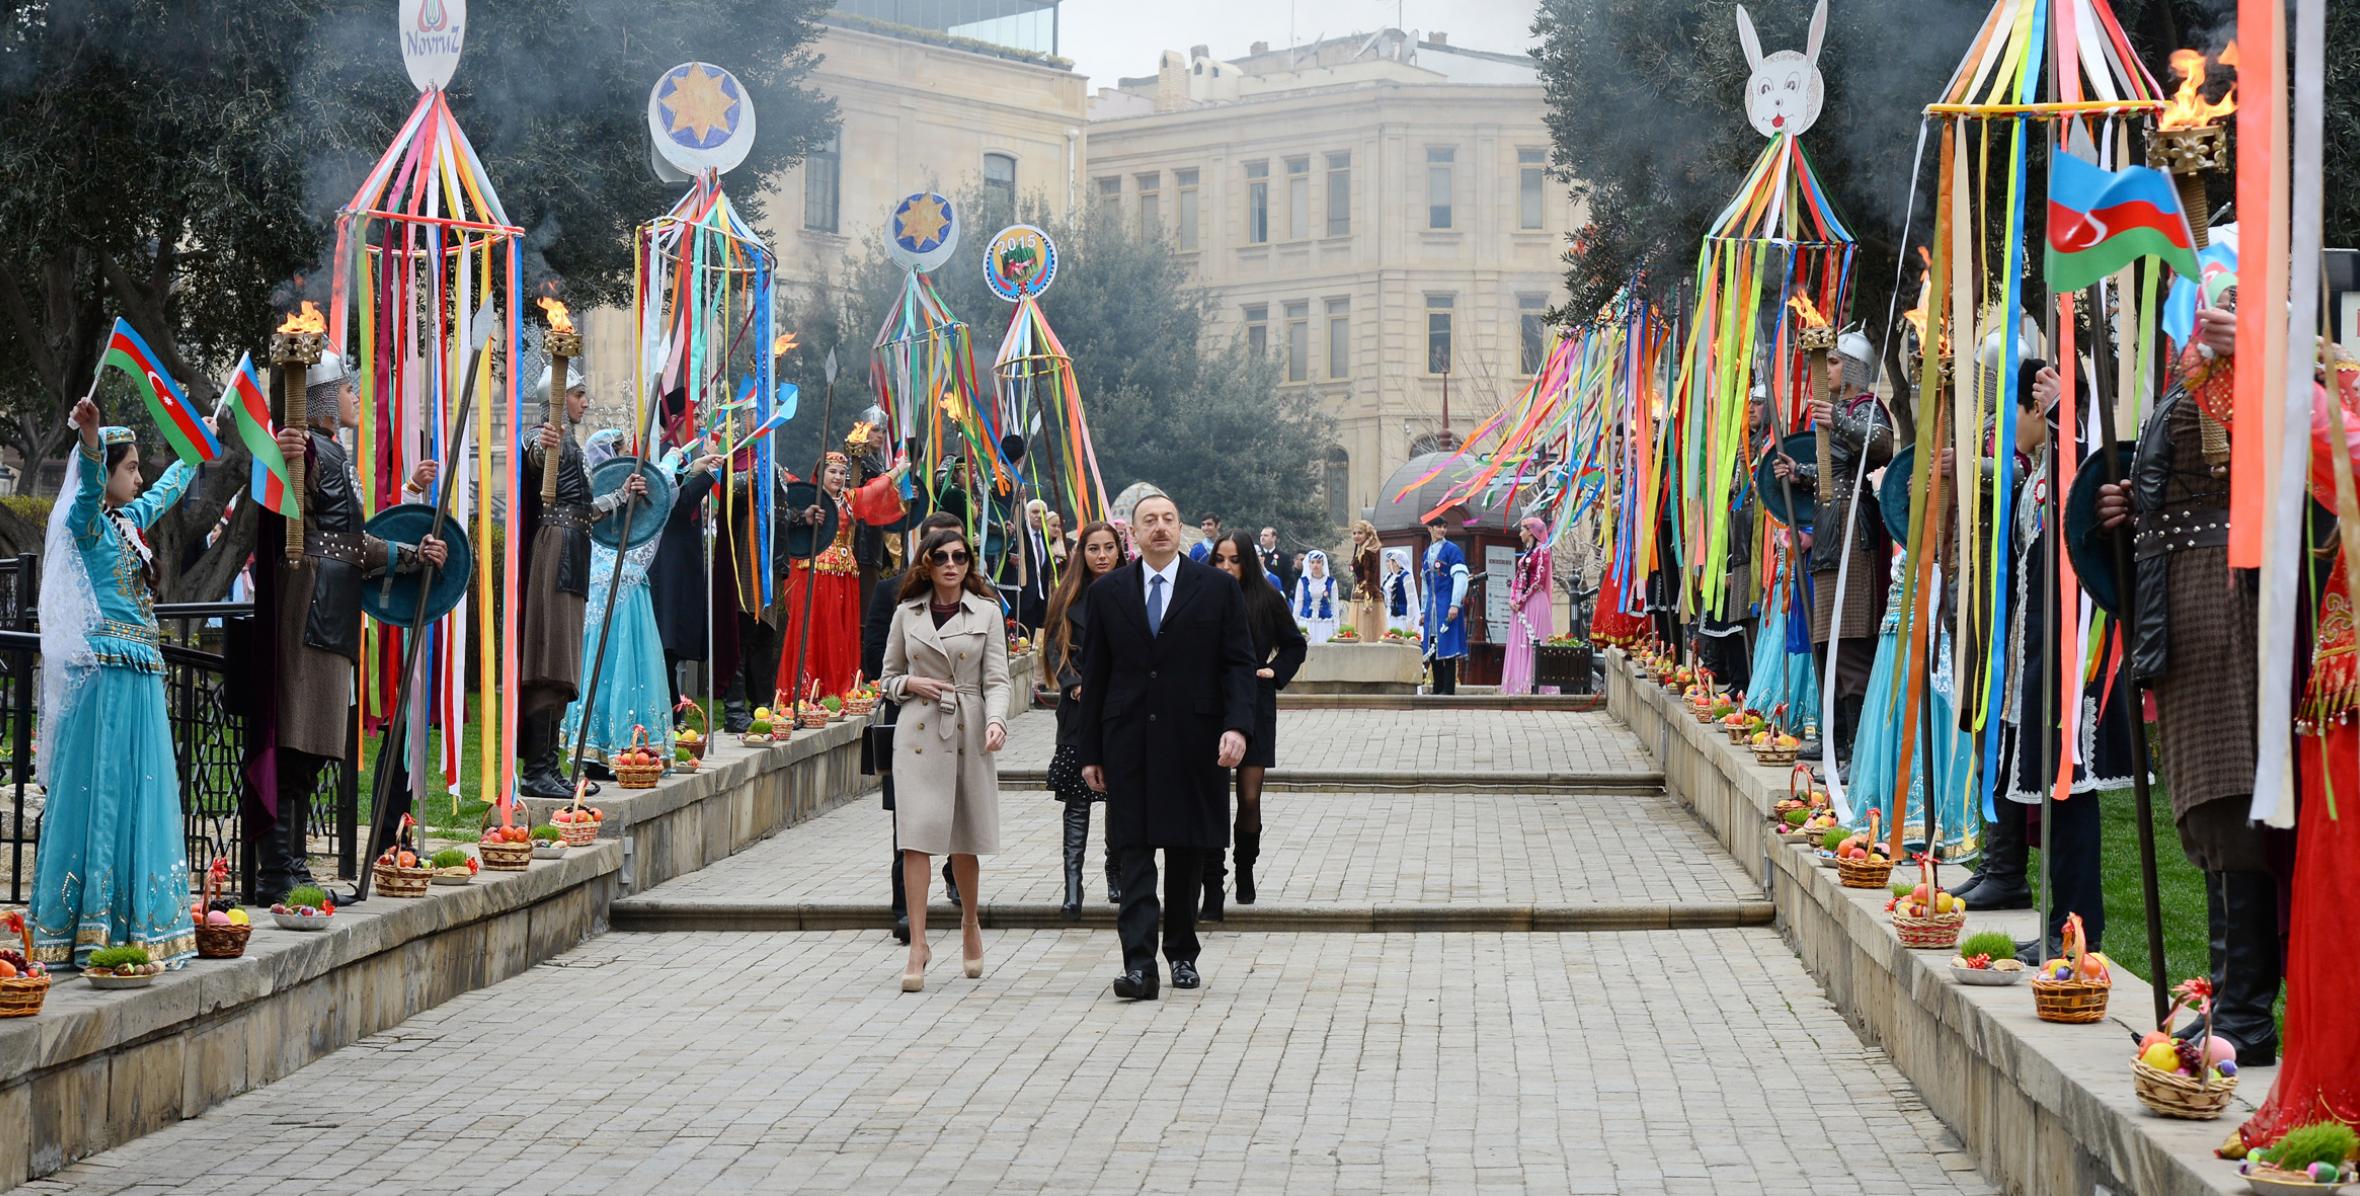 Ильхам Алиев принял участие во всенародных празднествах по случаю Новруз байрамы